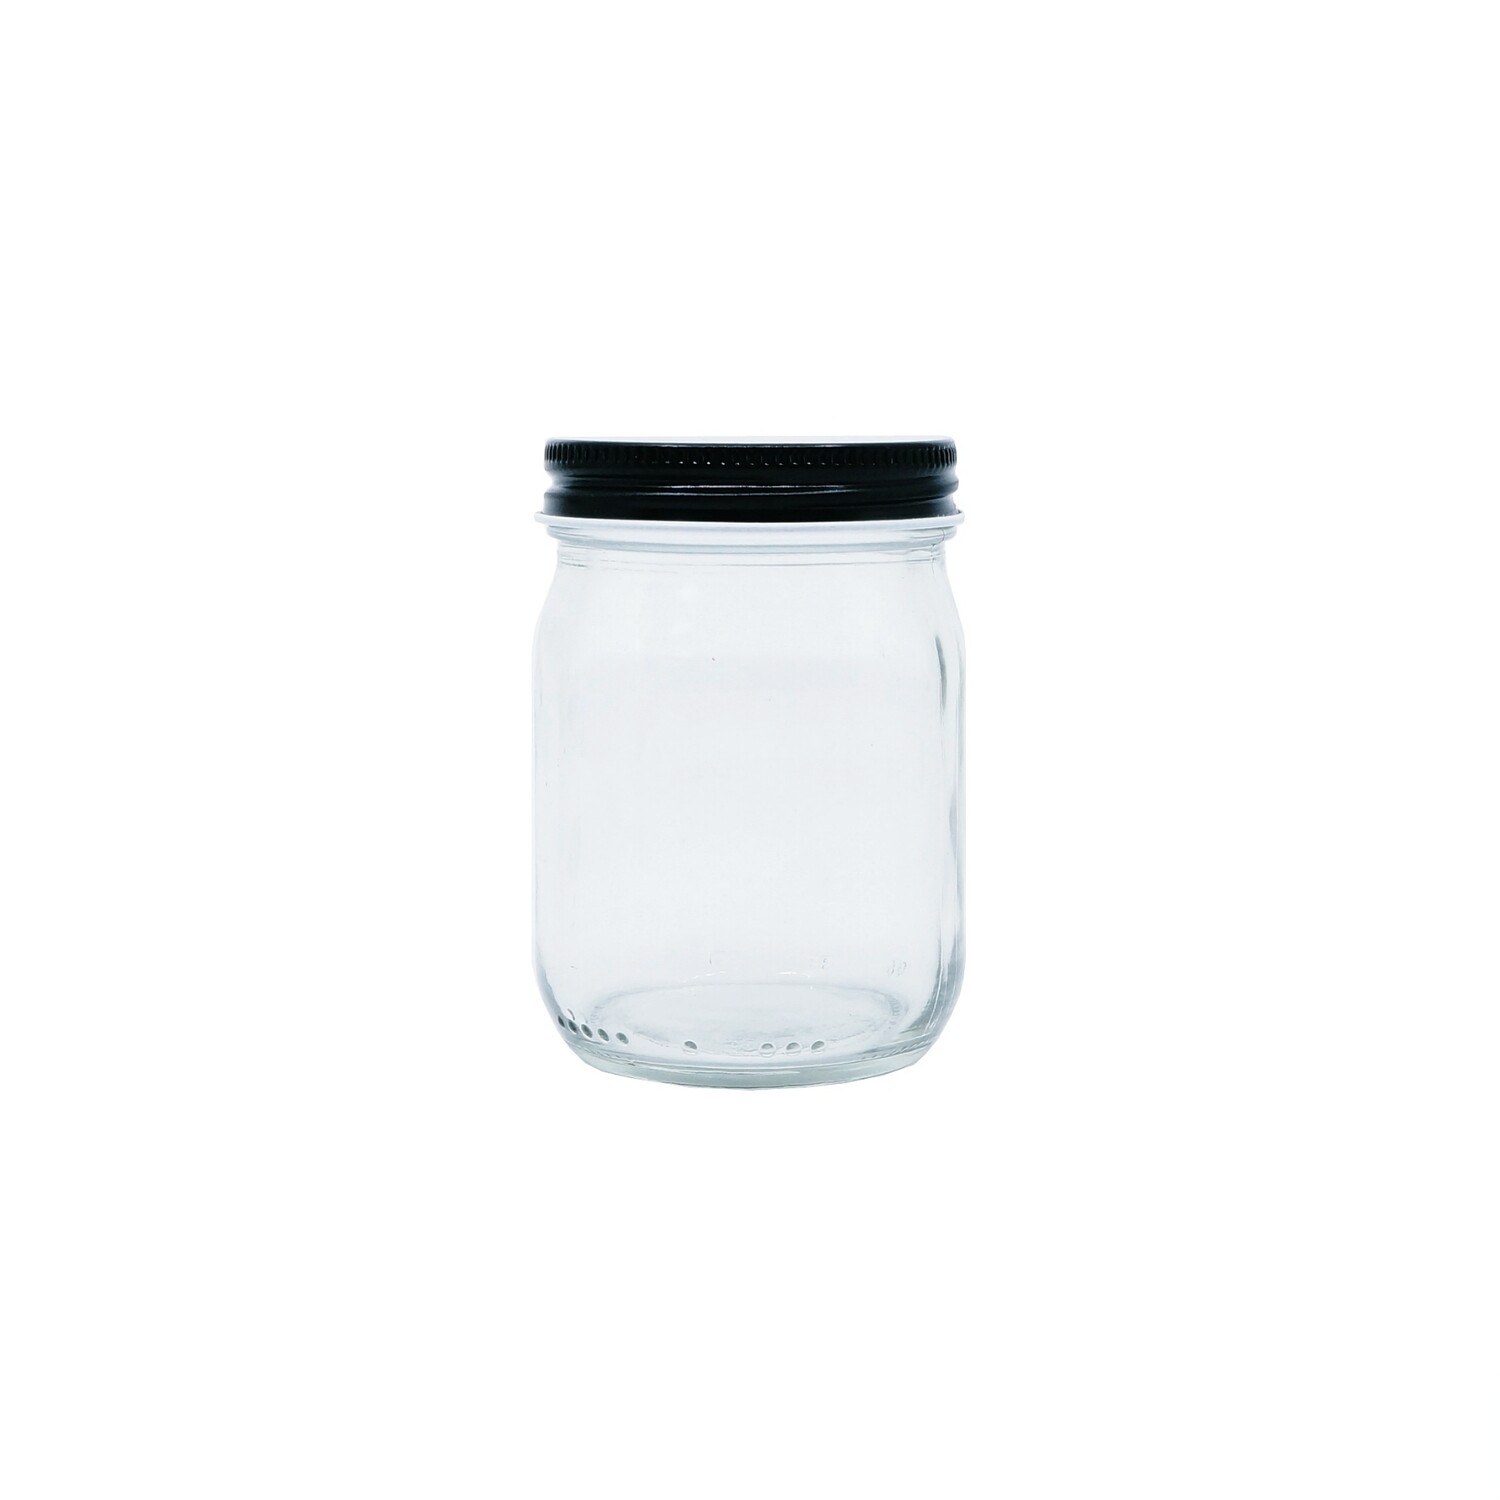 120ml, Glass Round Jar w/ Black Cap